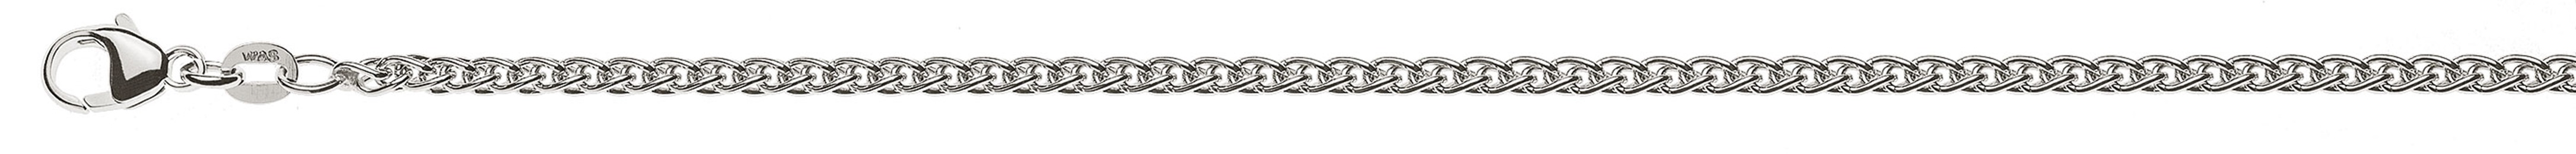 AURONOS Prestige Necklace white gold 18K cable chain 55cm 2.5mm